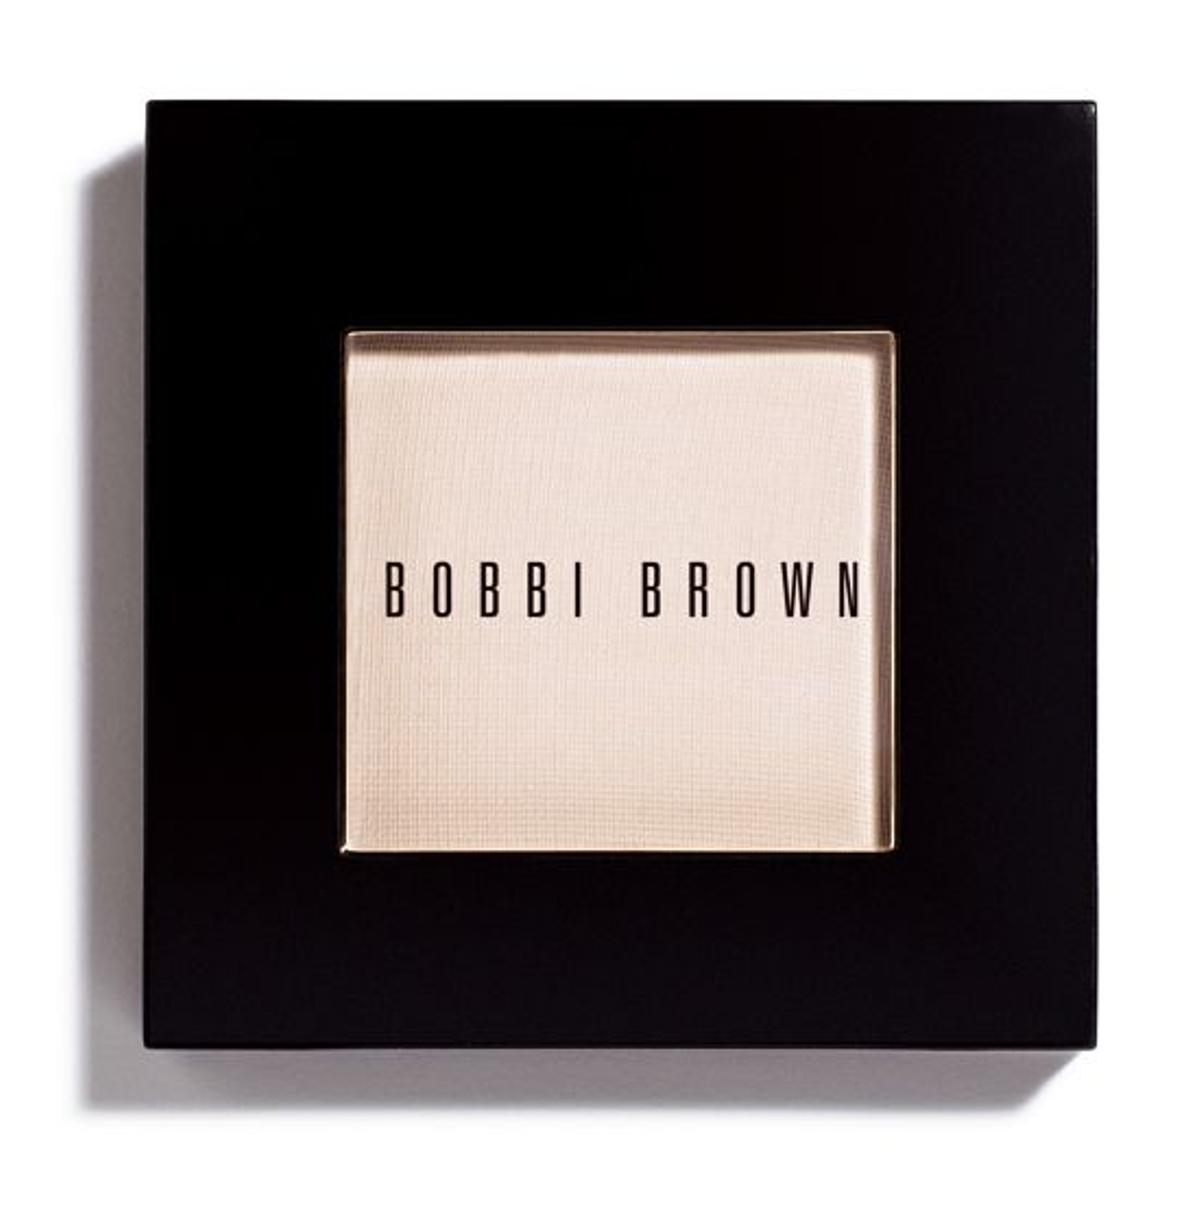 Sombra Bobb i Brown (24,50 €).